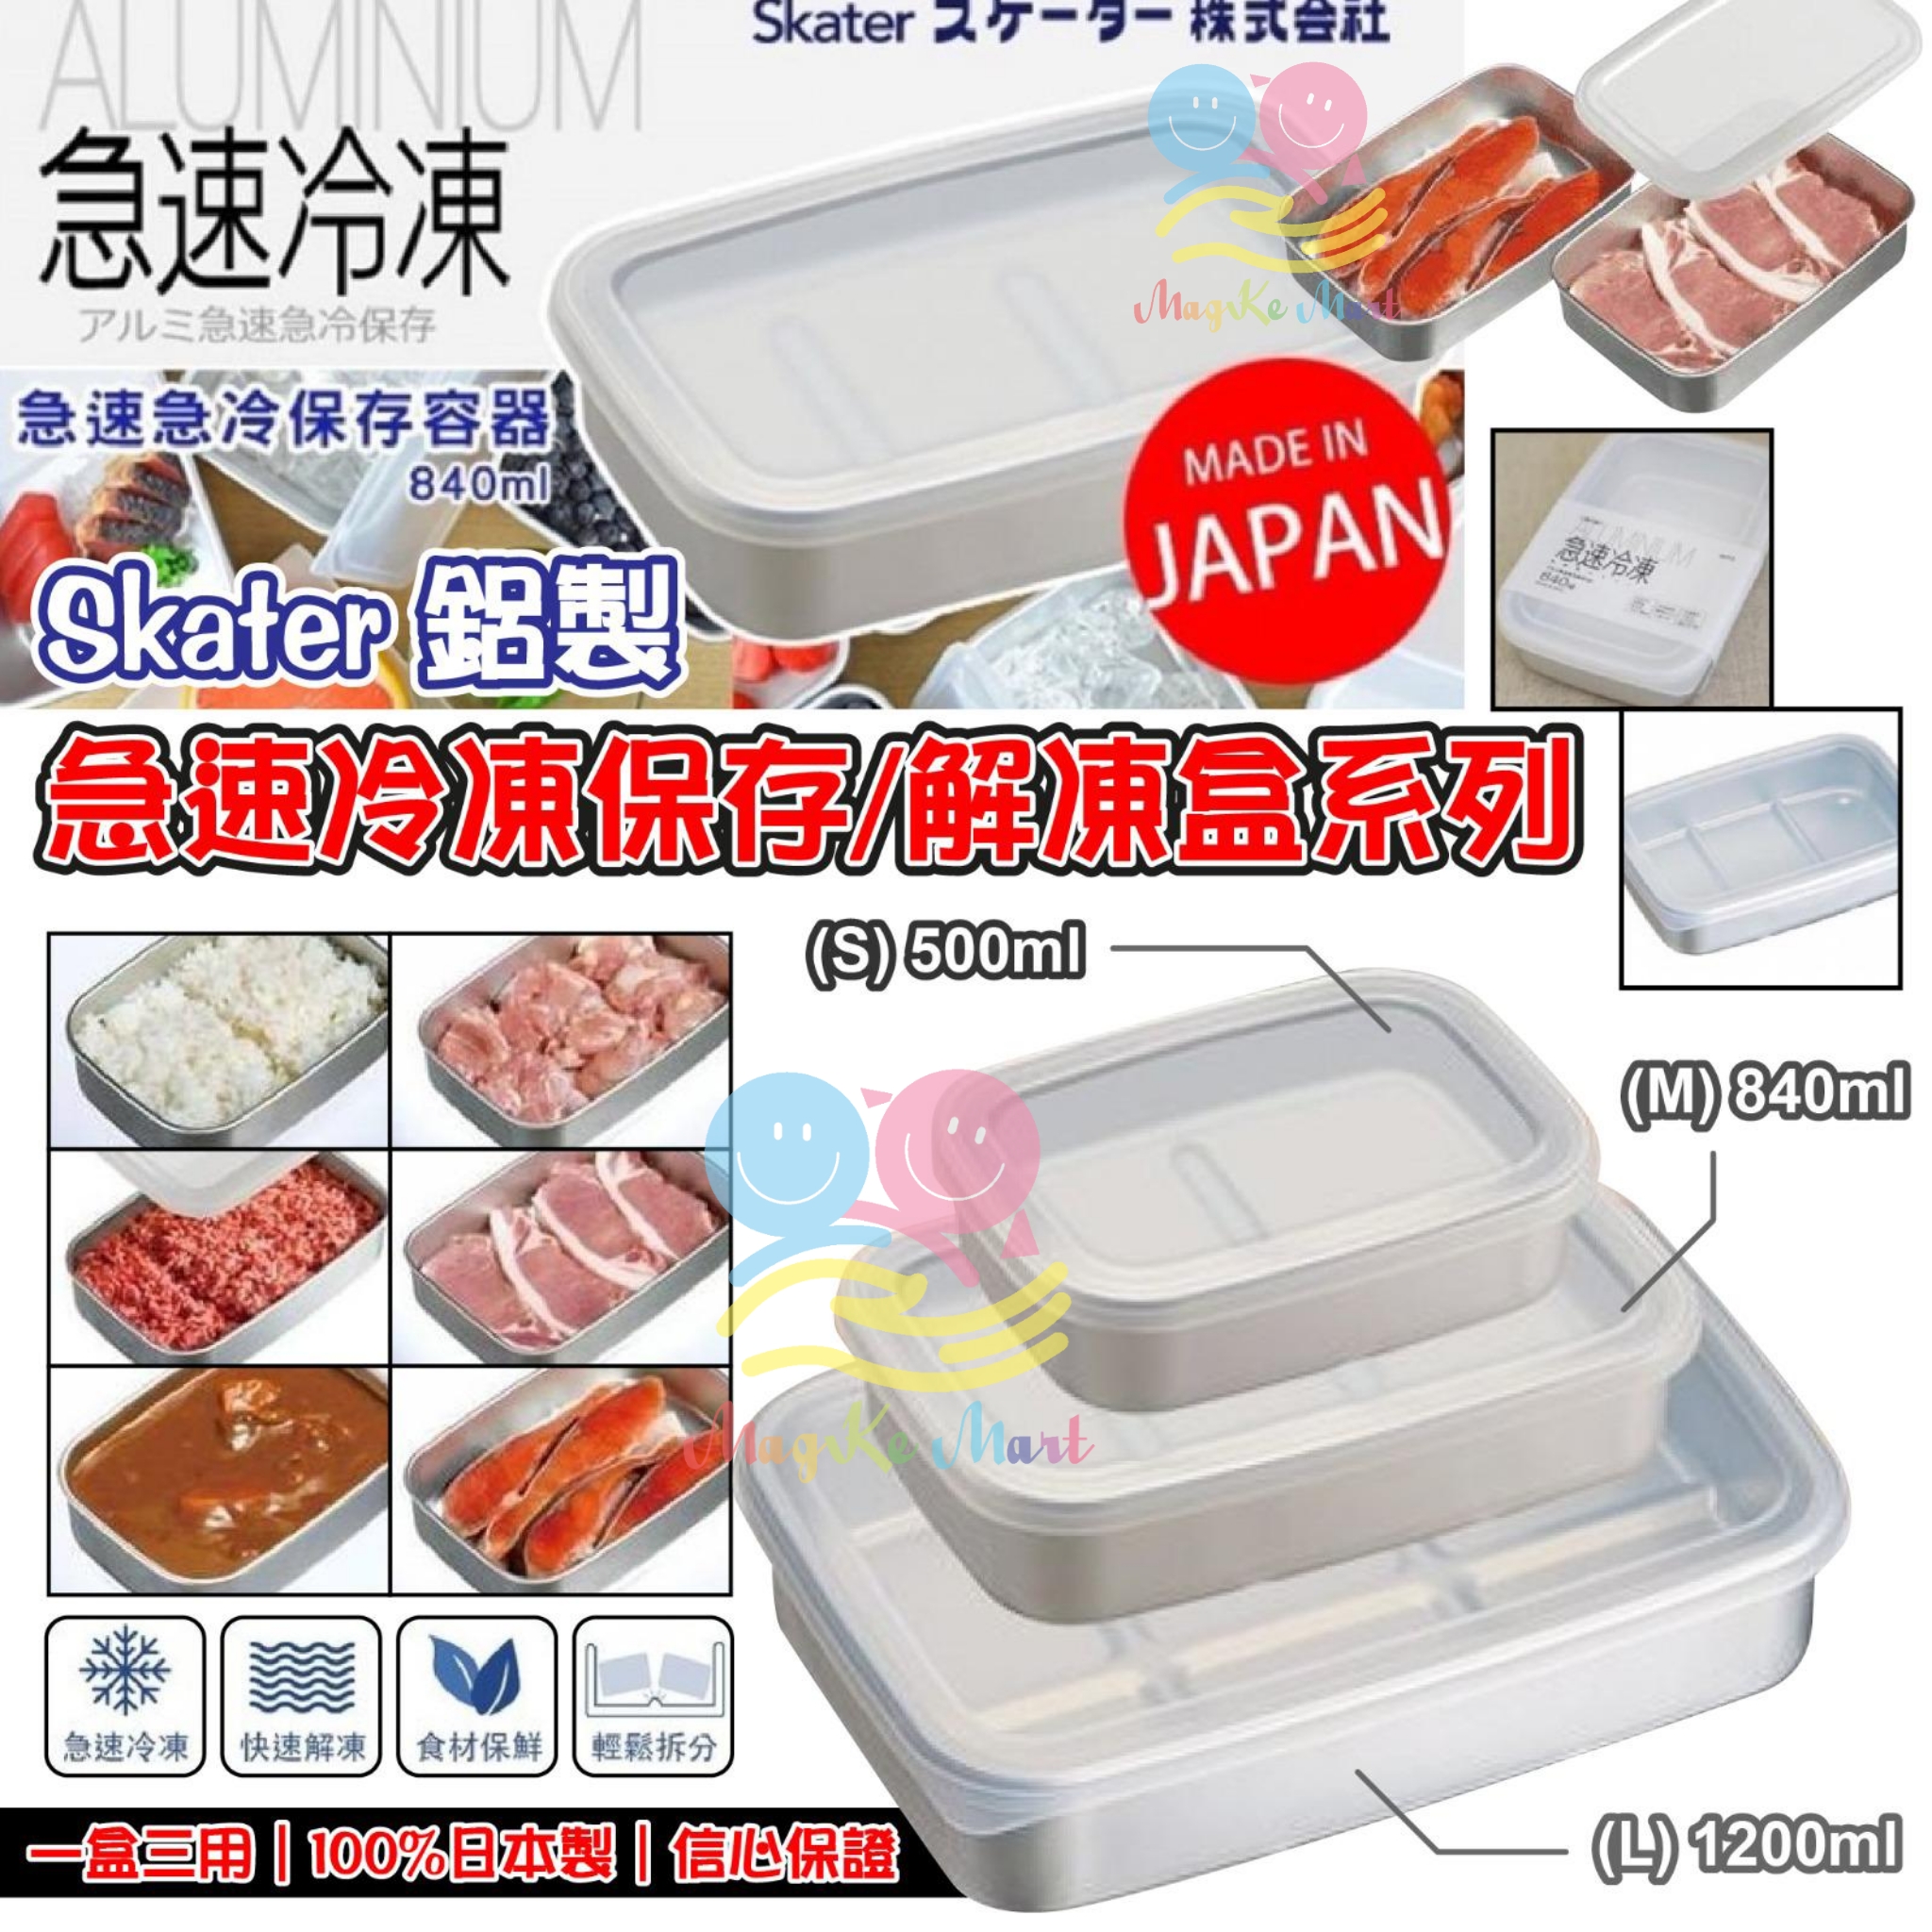 日本 Skater 鋁製急速冷凍保存/解凍盒系列